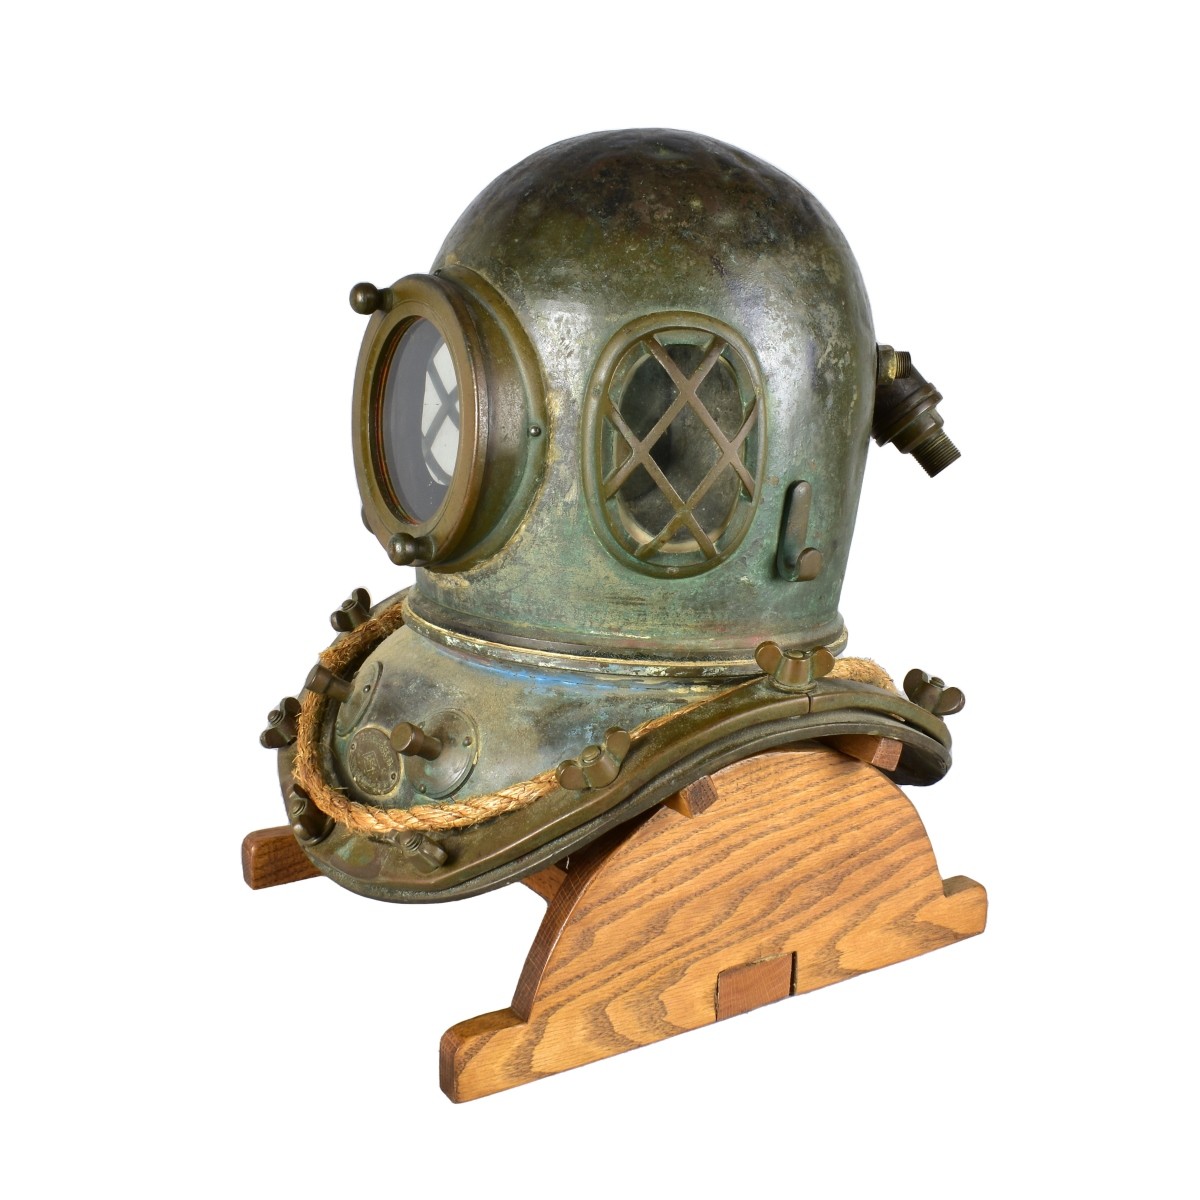 The Yokohama Diving Co. Japanese Diving Helmet